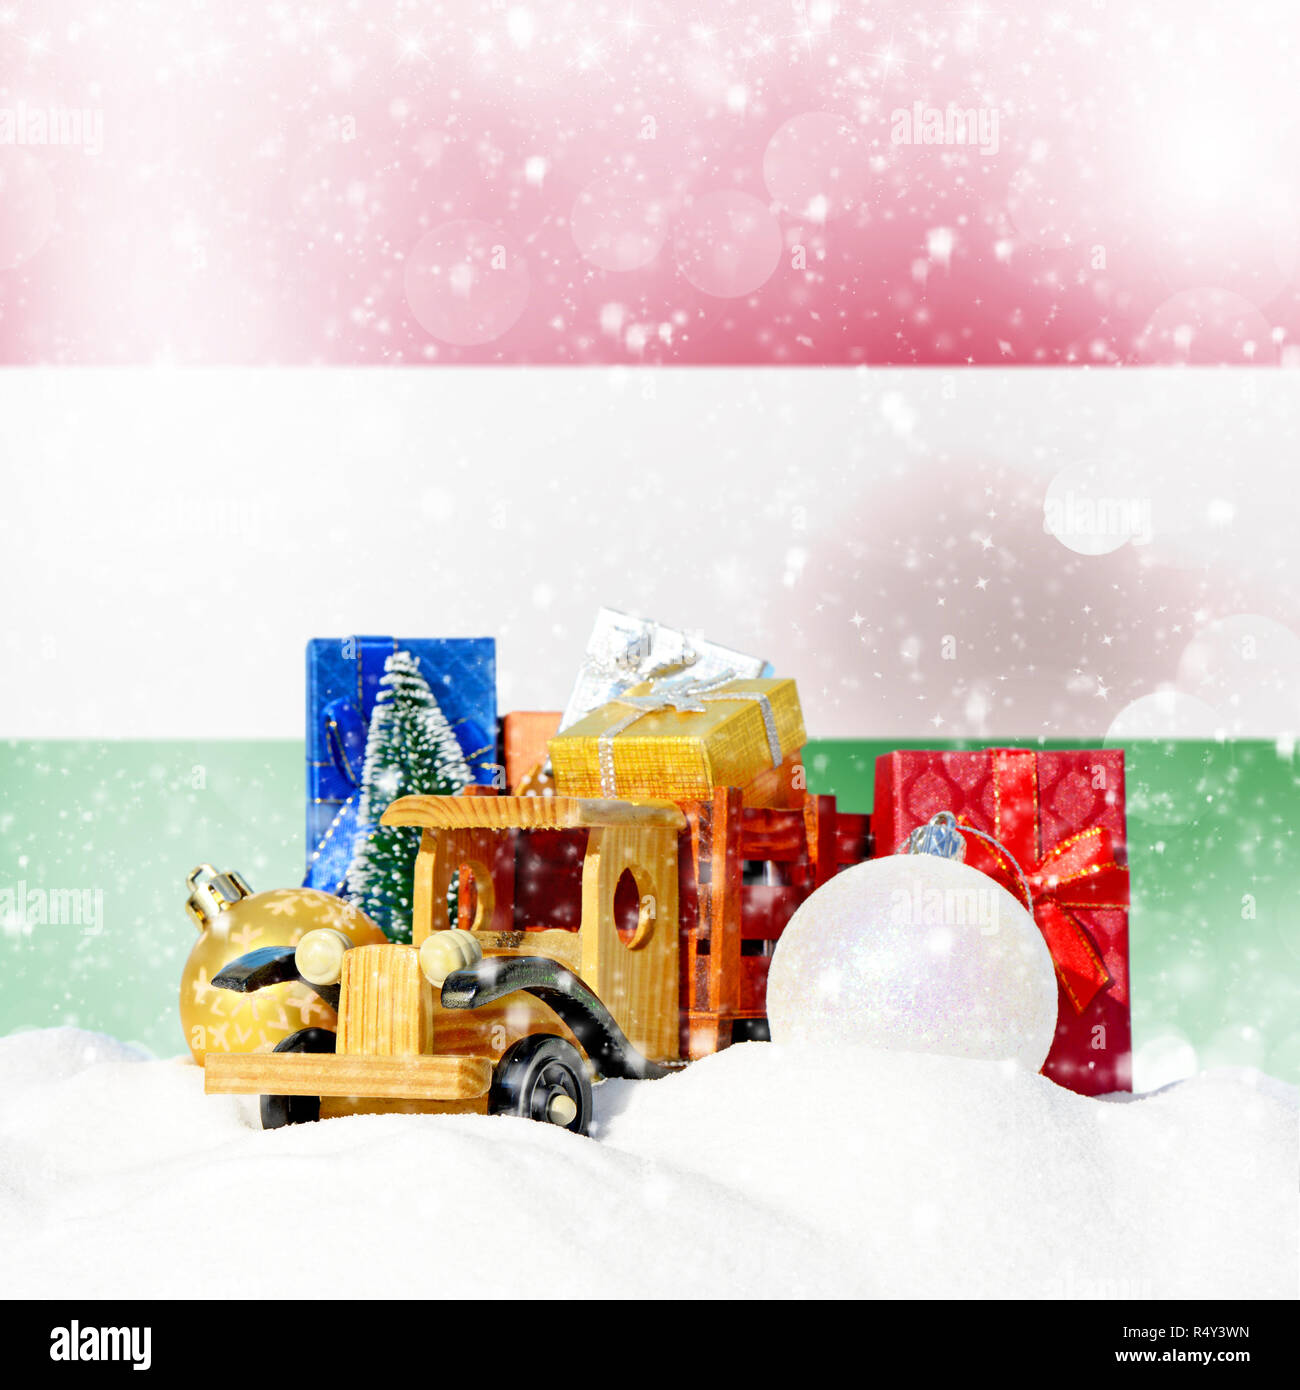 Weihnachten Hintergrund. Spielzeug-LKW mit Geschenken, Neues Jahr Tanne, Kugeln im Schneetreiben und ungarische Flagge Stockfoto